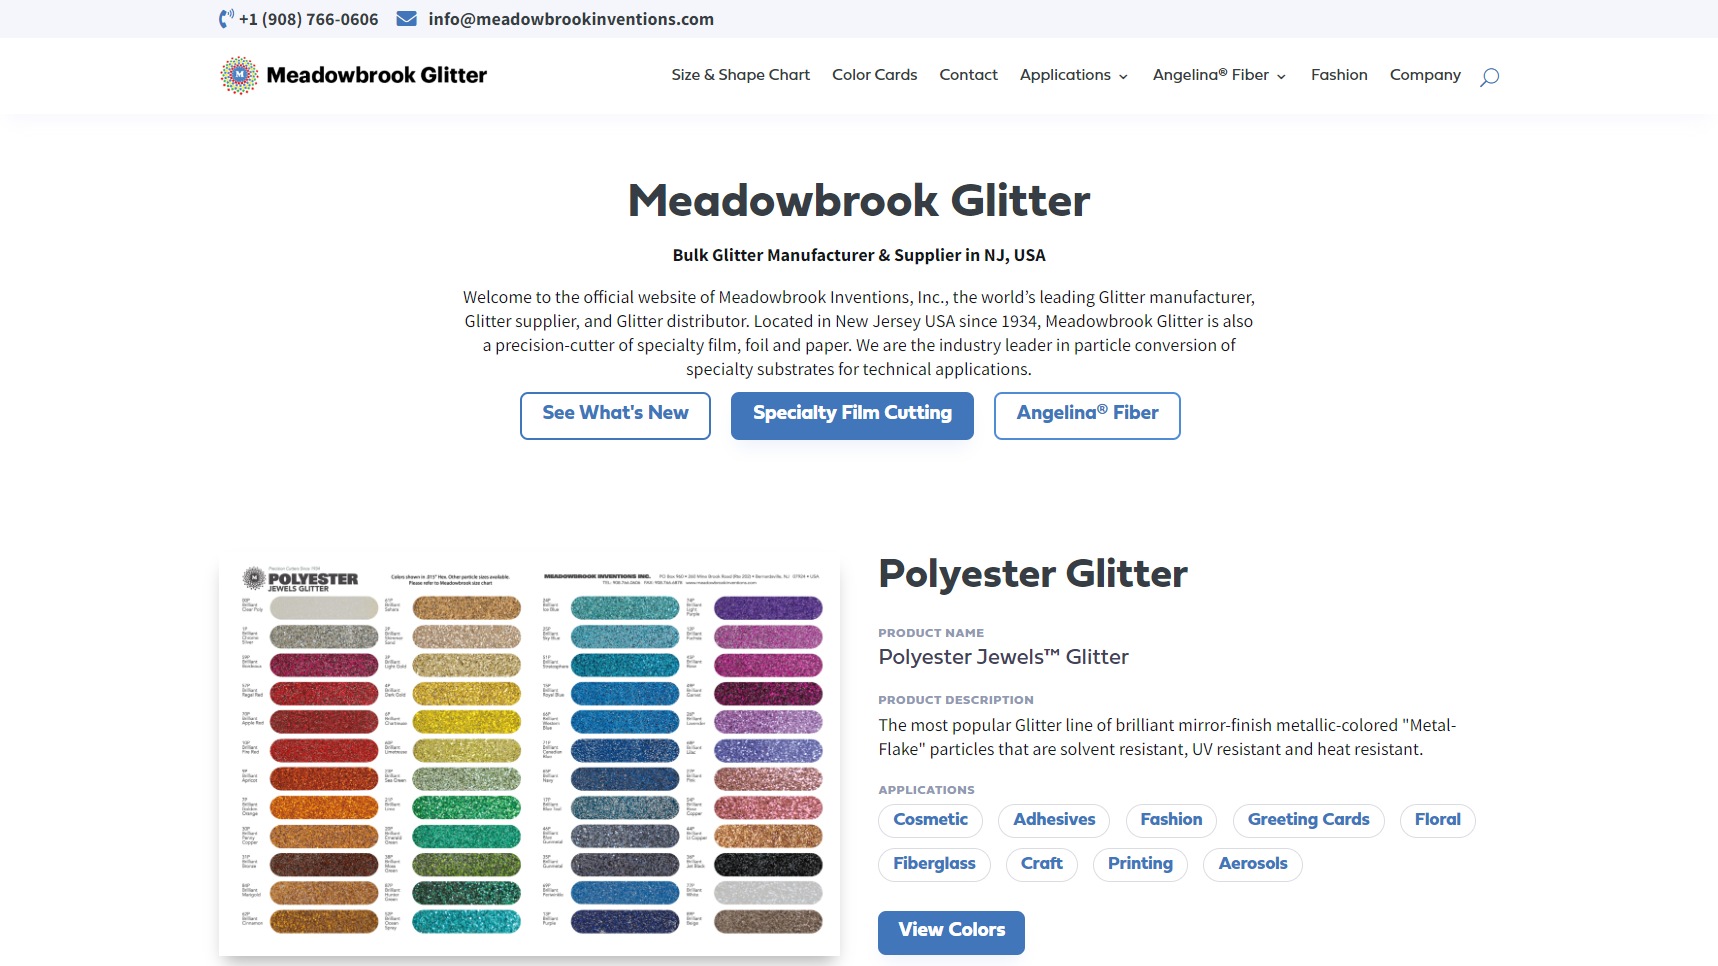 Meadowbrook Glitter - Glitter Manufacturer